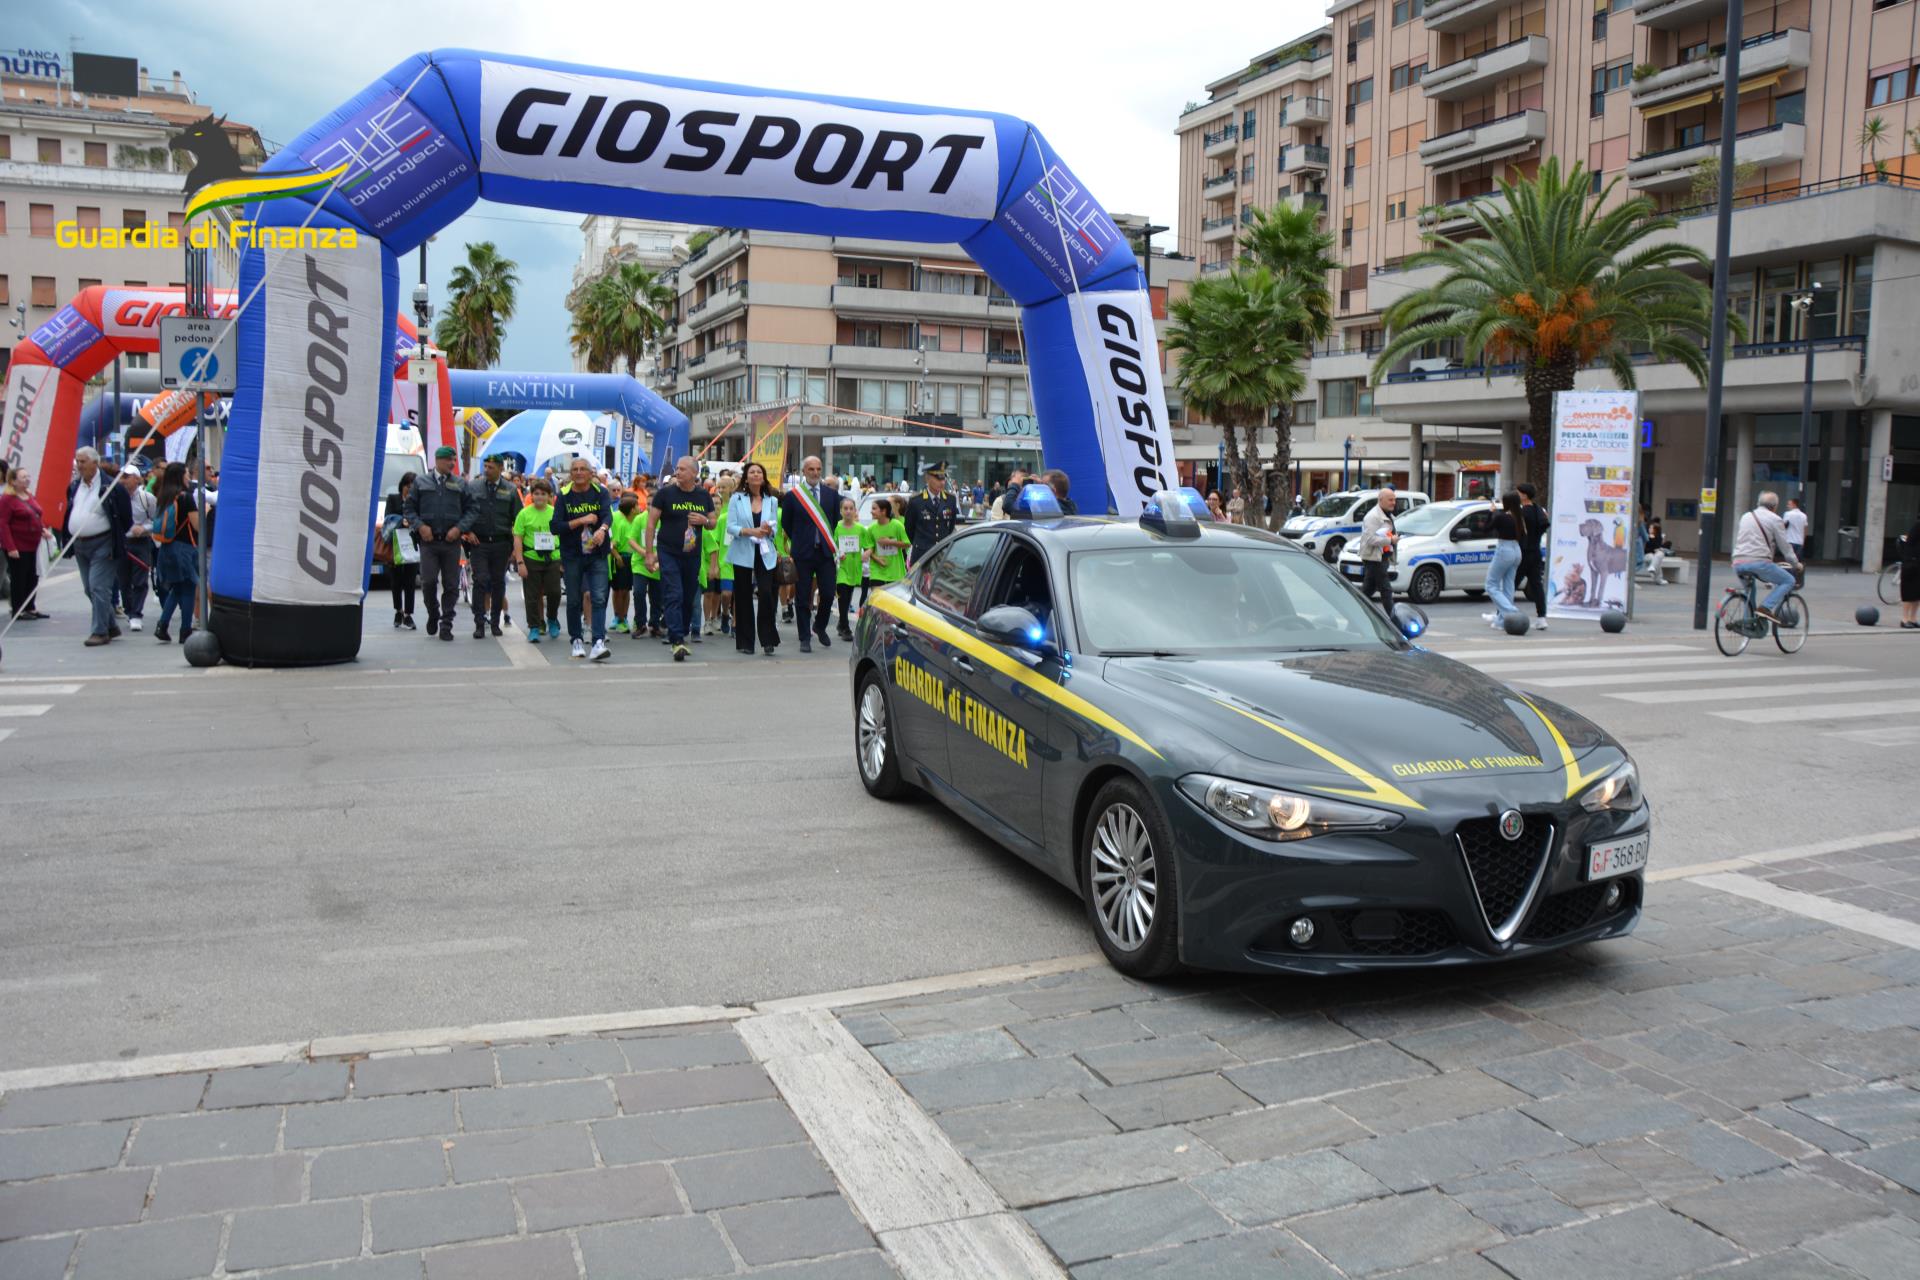 Pescara, alla Maratona Dannunziana  la Guardia di Finanza  testimonial di sport, salute e solidarietà 